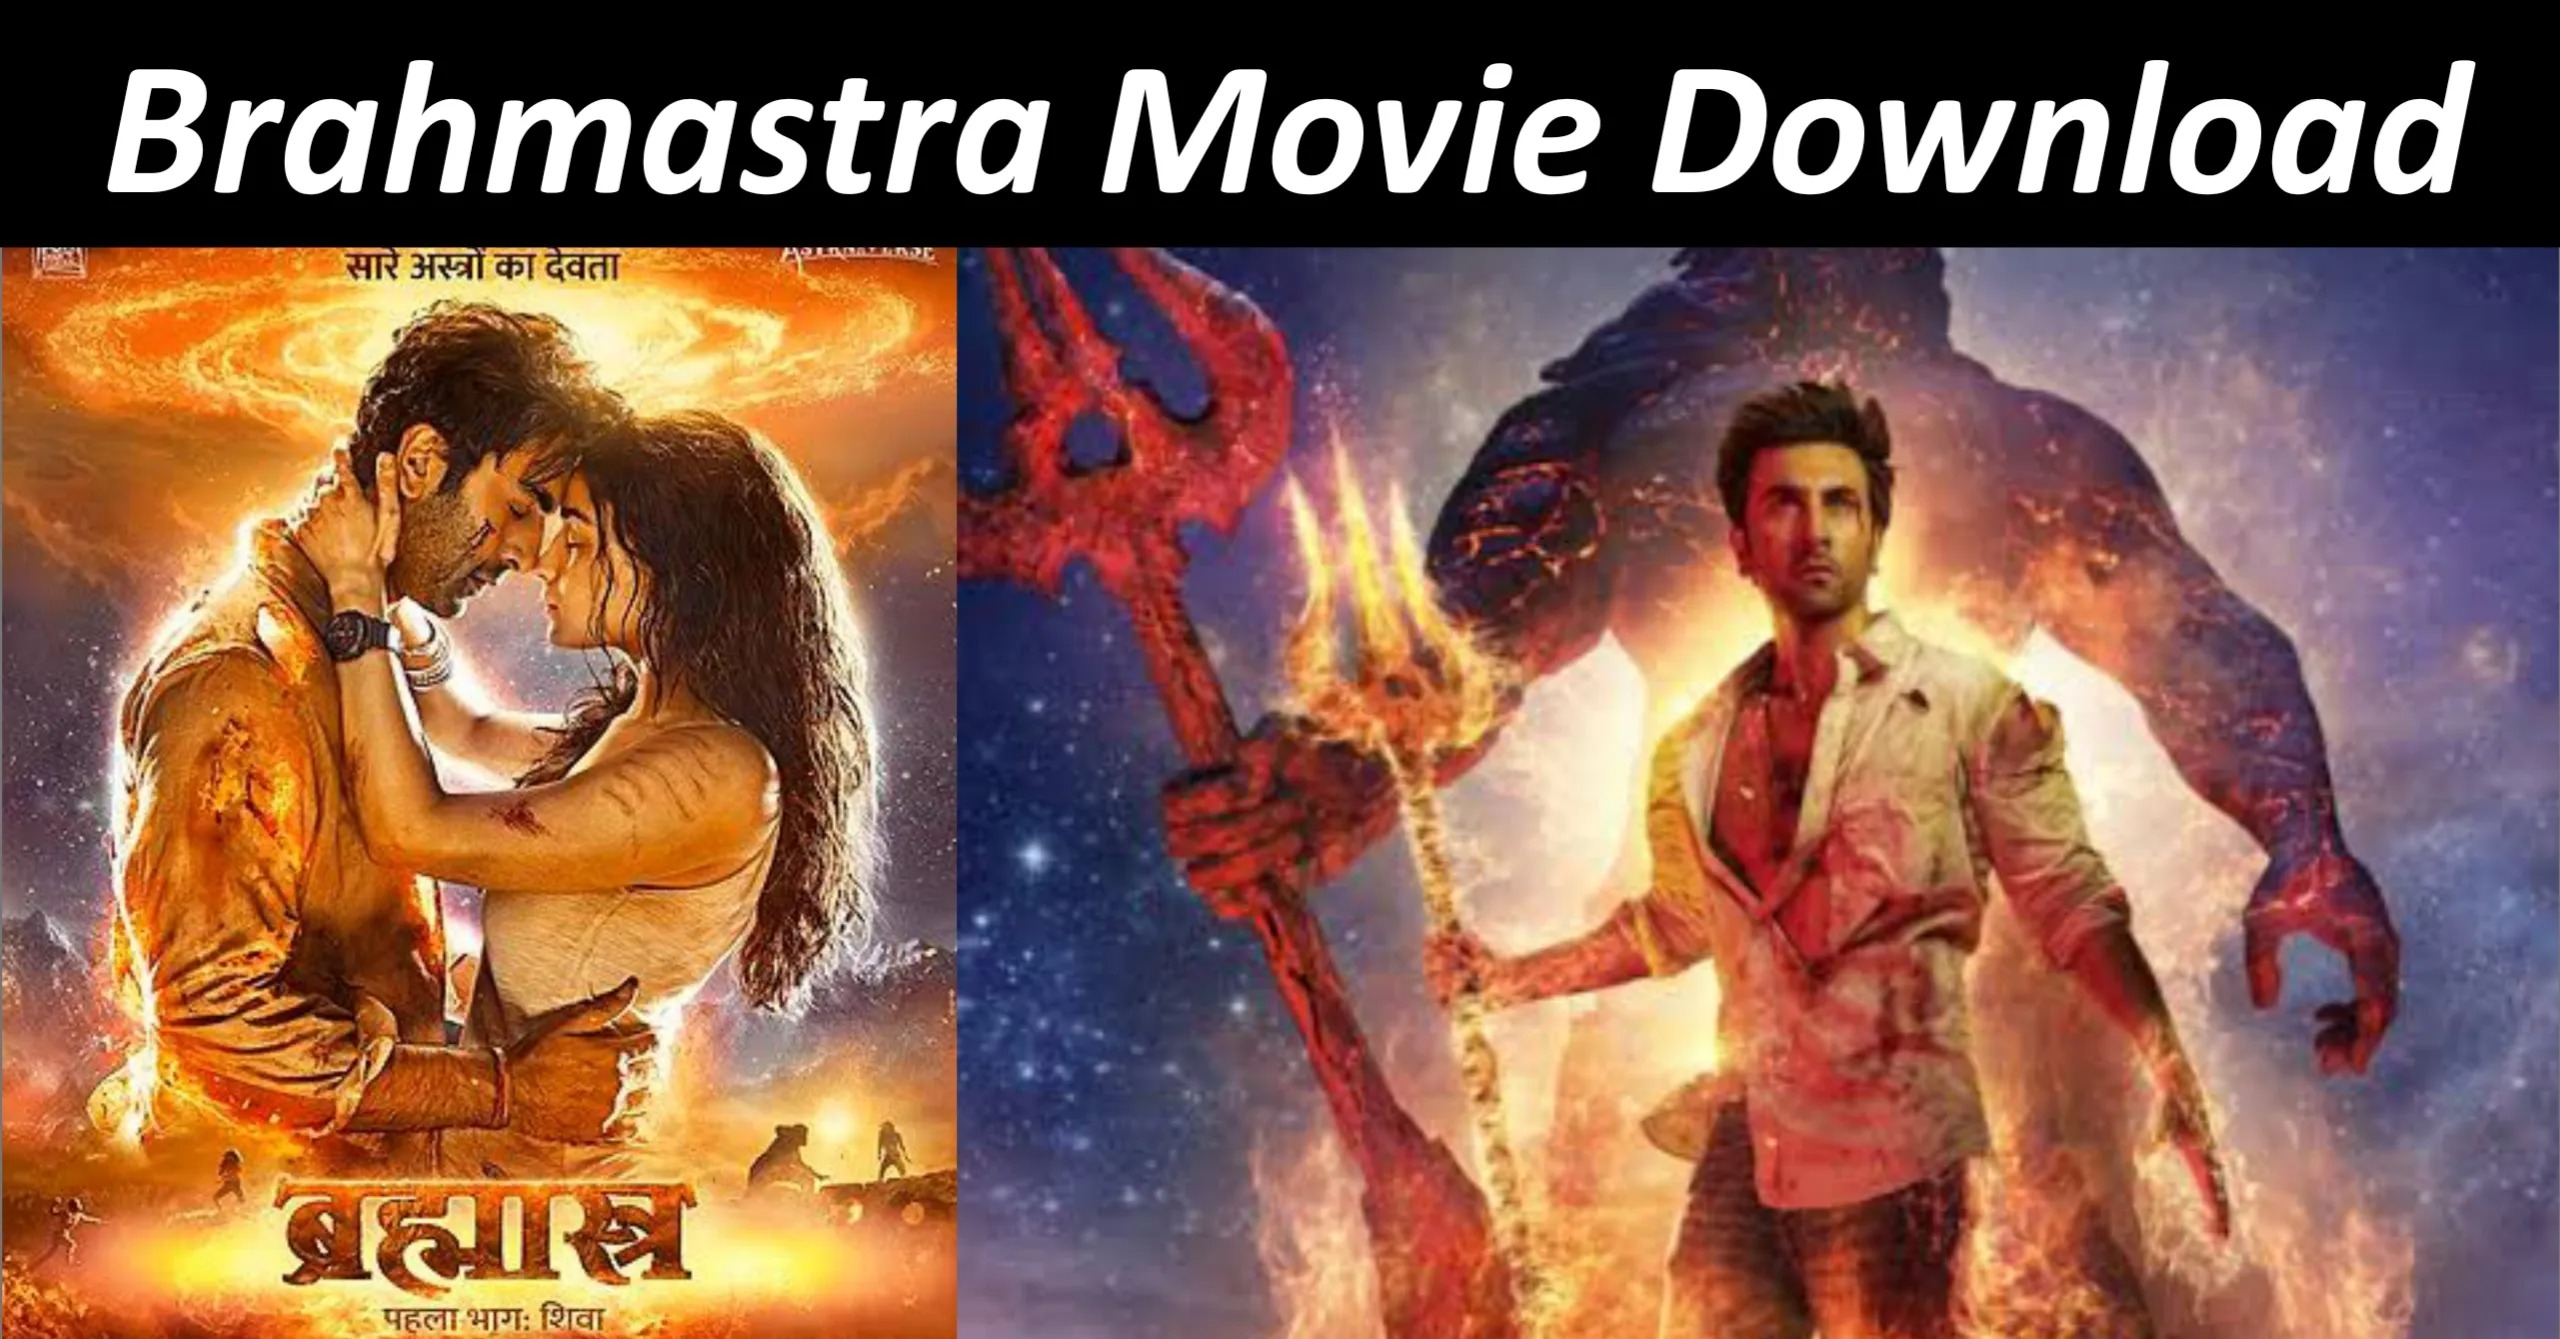 Brahmastra Movie Download Telegram Link 1080p